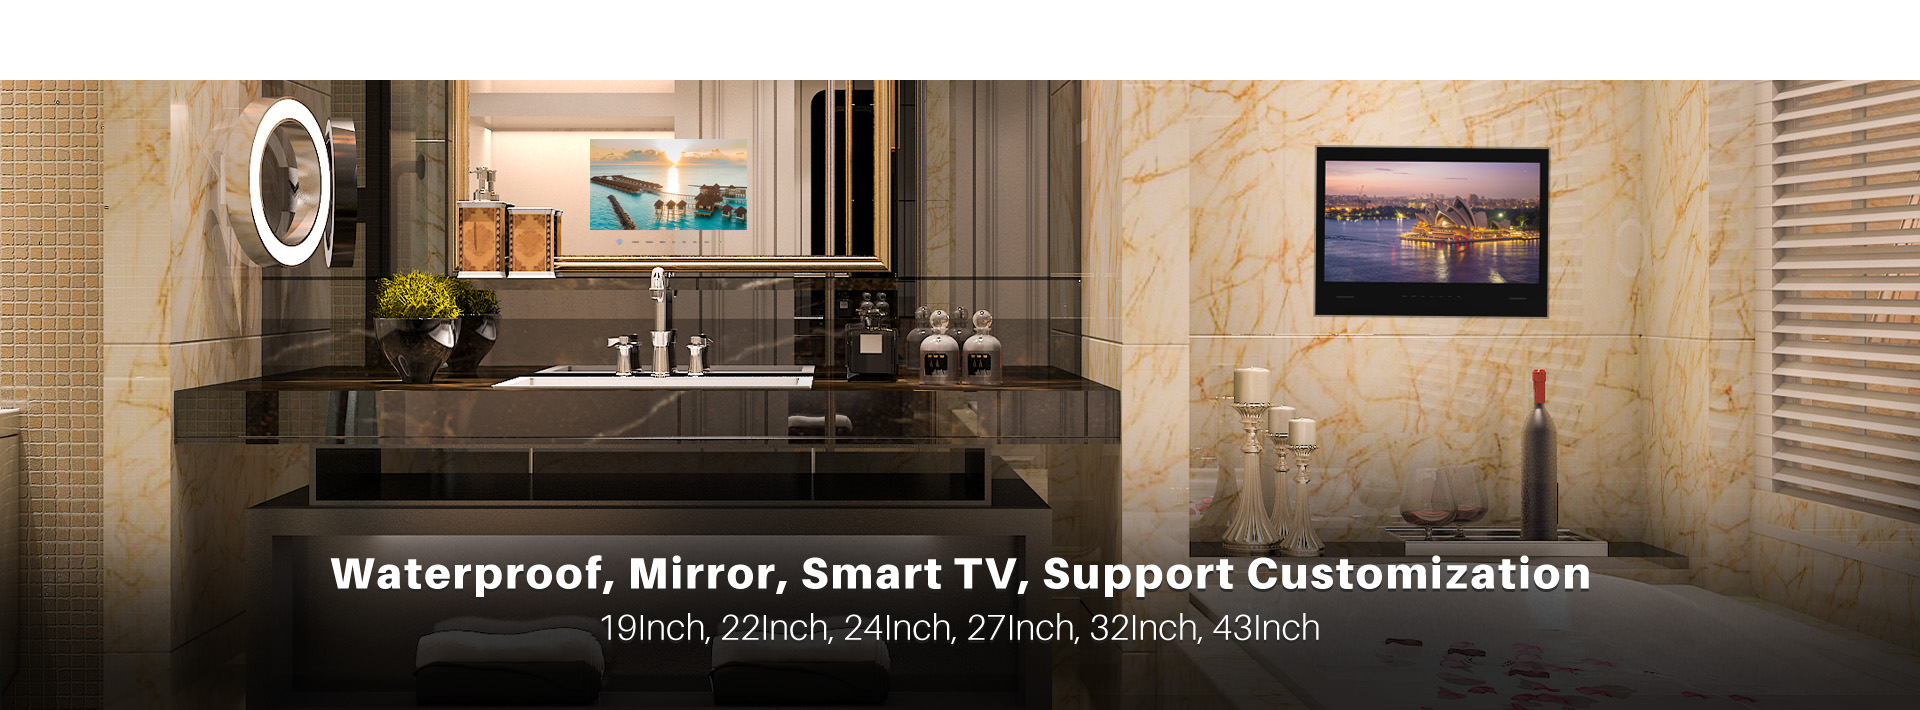 Kontech Bathroom Waterproof TVs/Mirror TVs